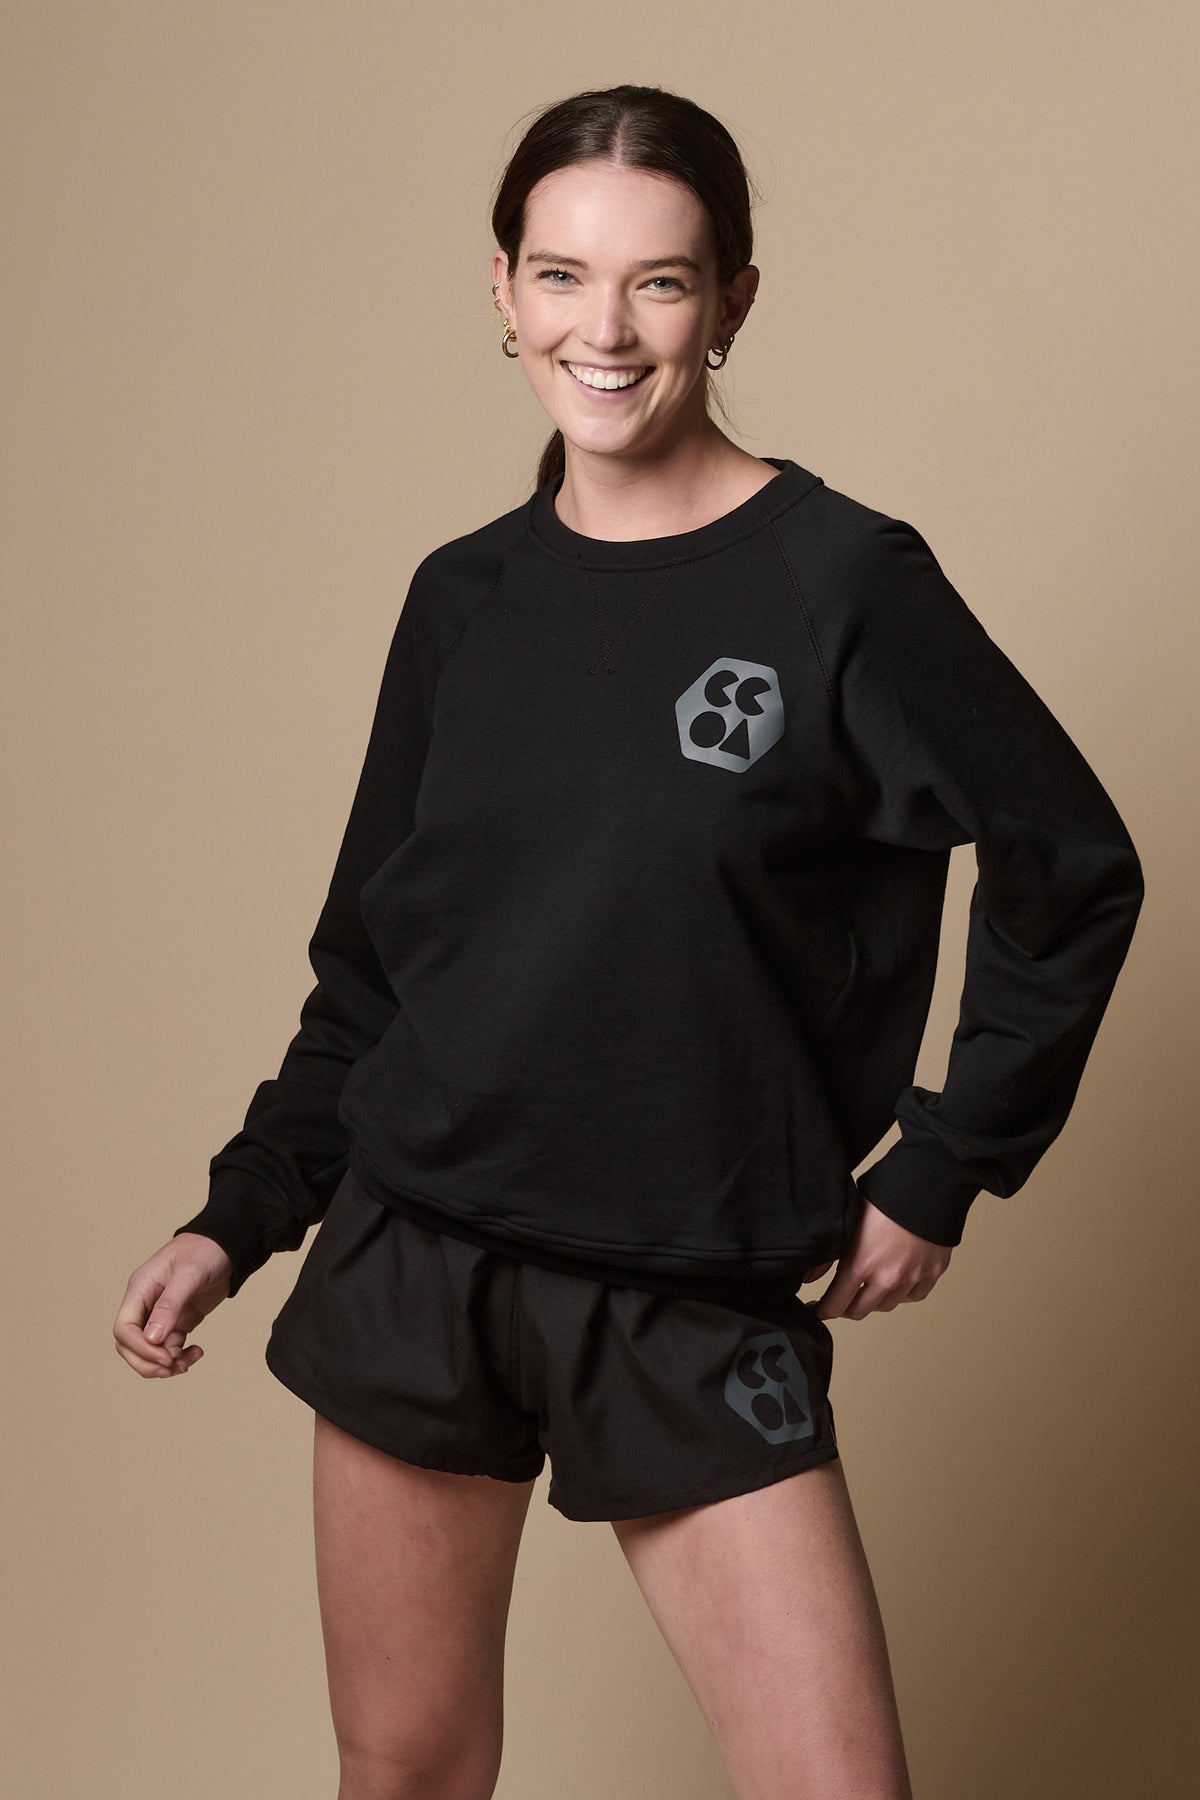 
            Smiley female wearing raglan sweatshirt plastic free in black